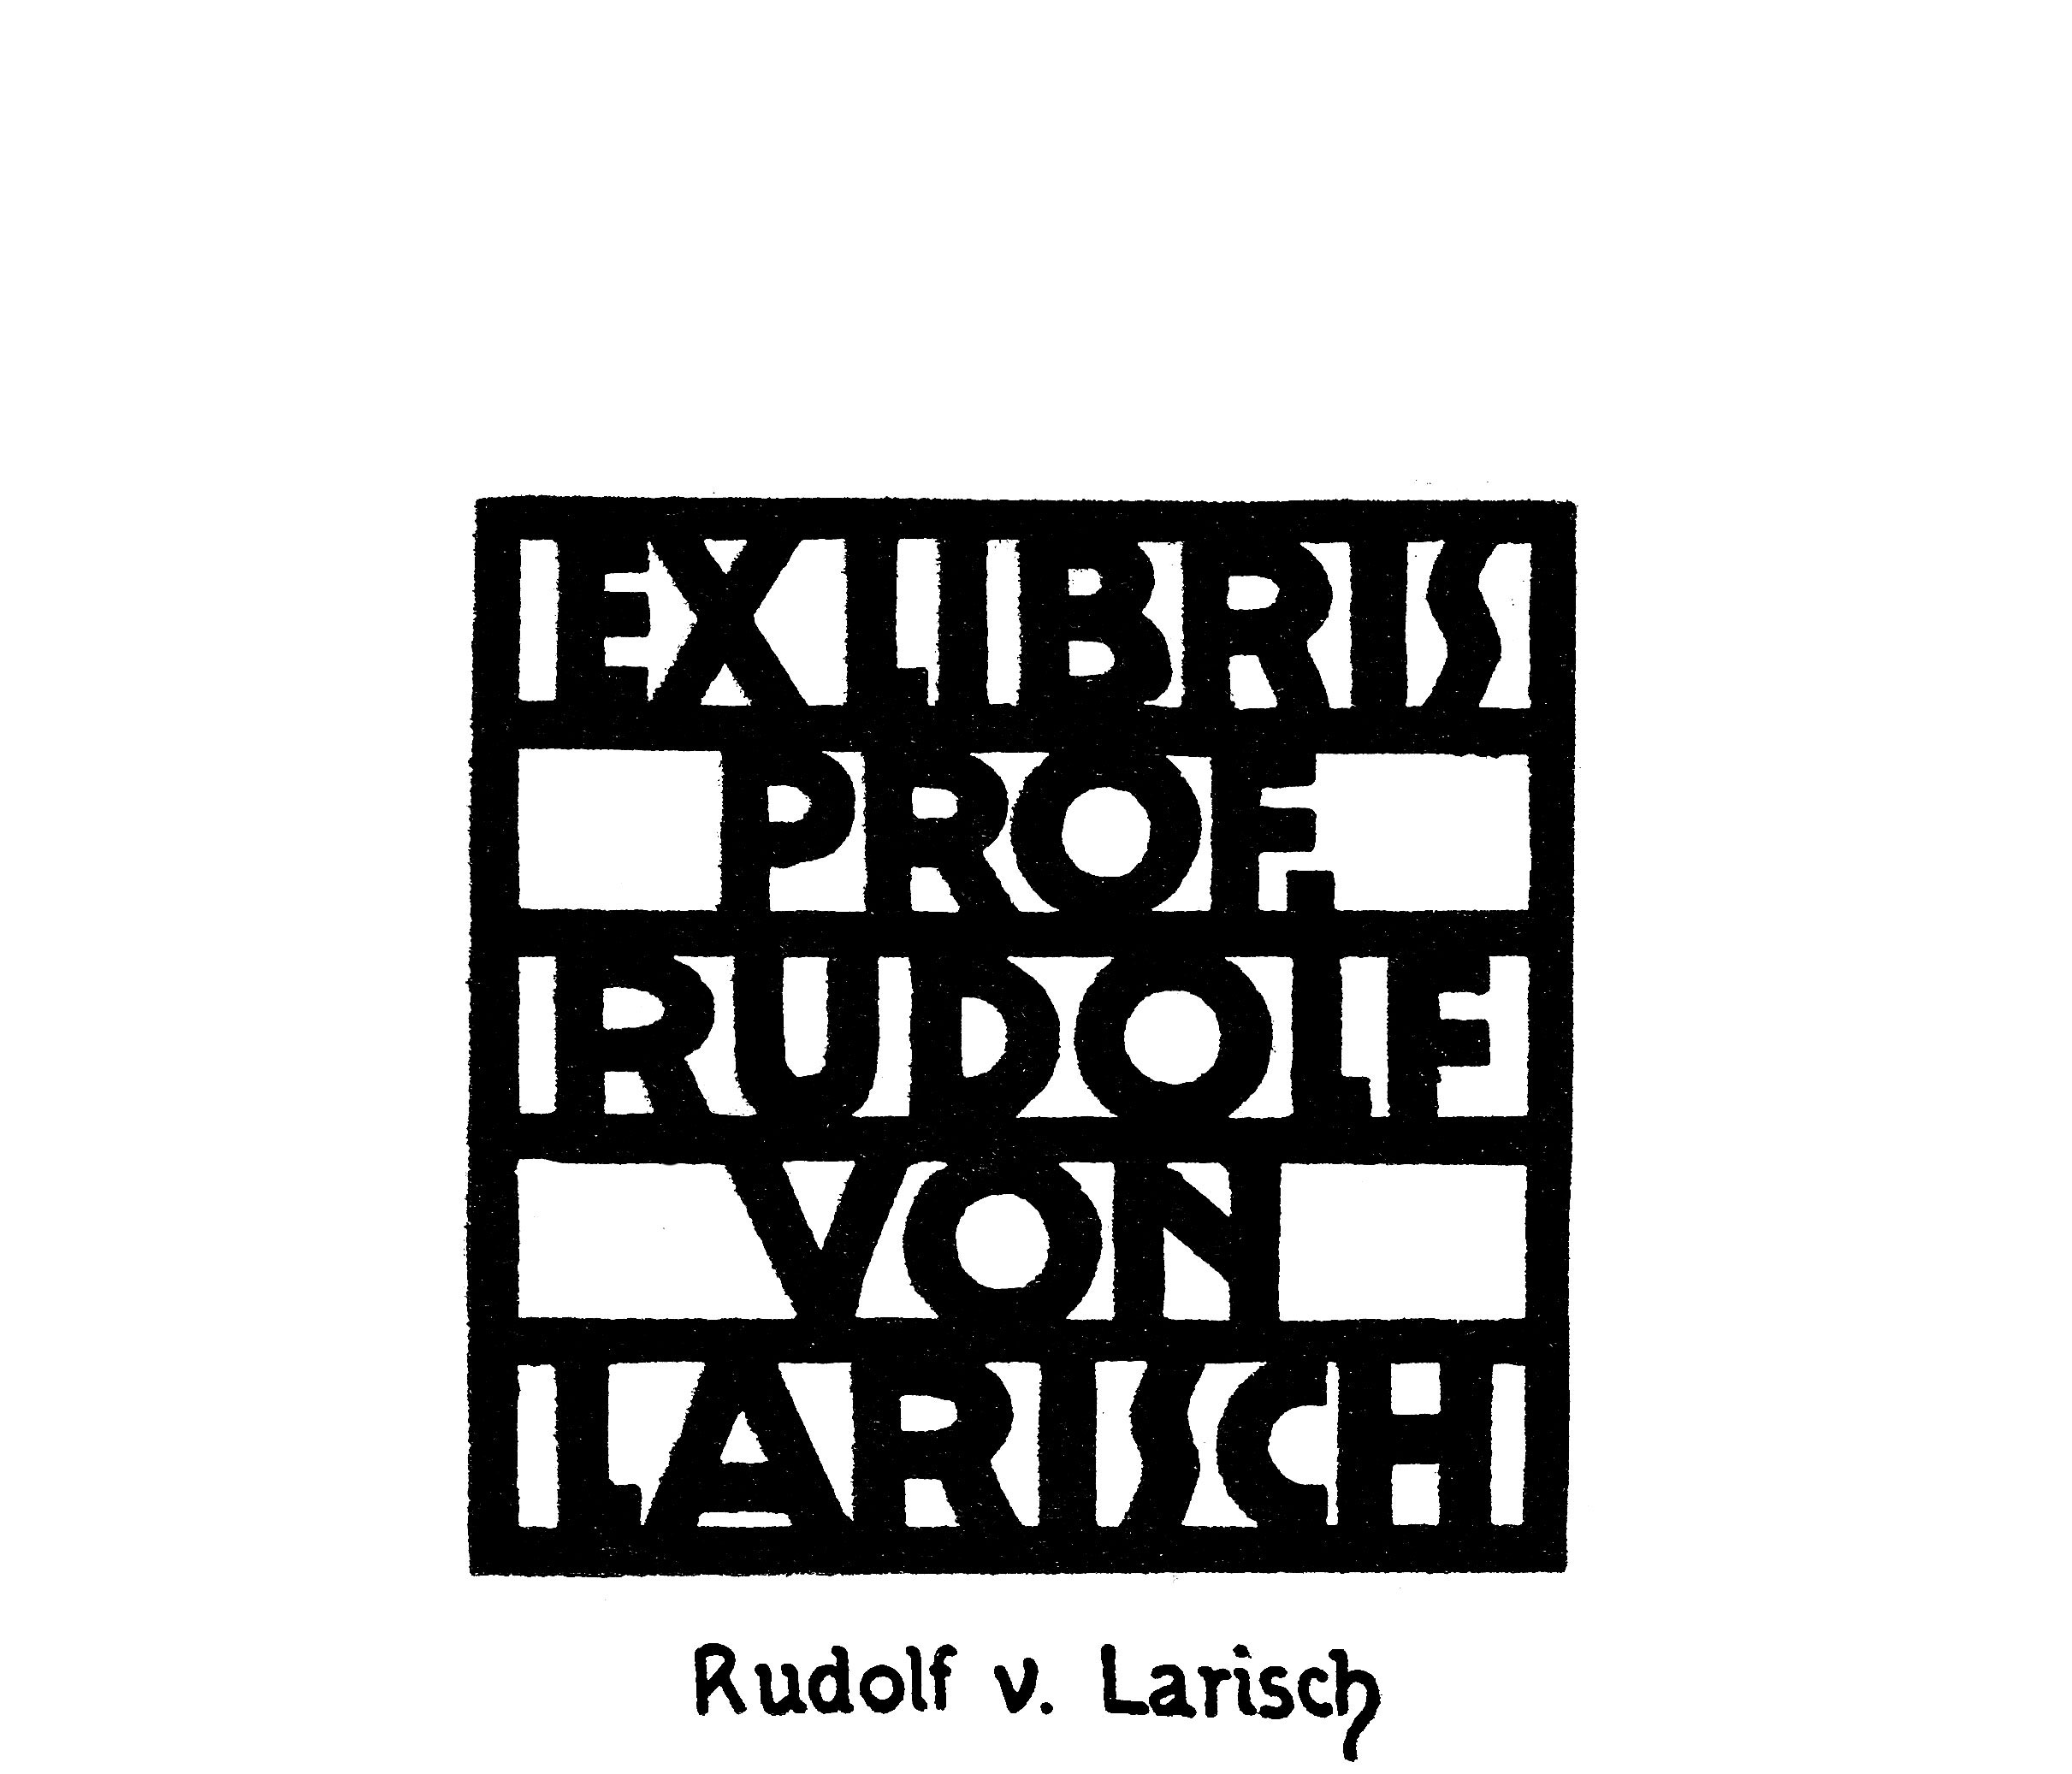 Bookplate by Rudolf von Larisch